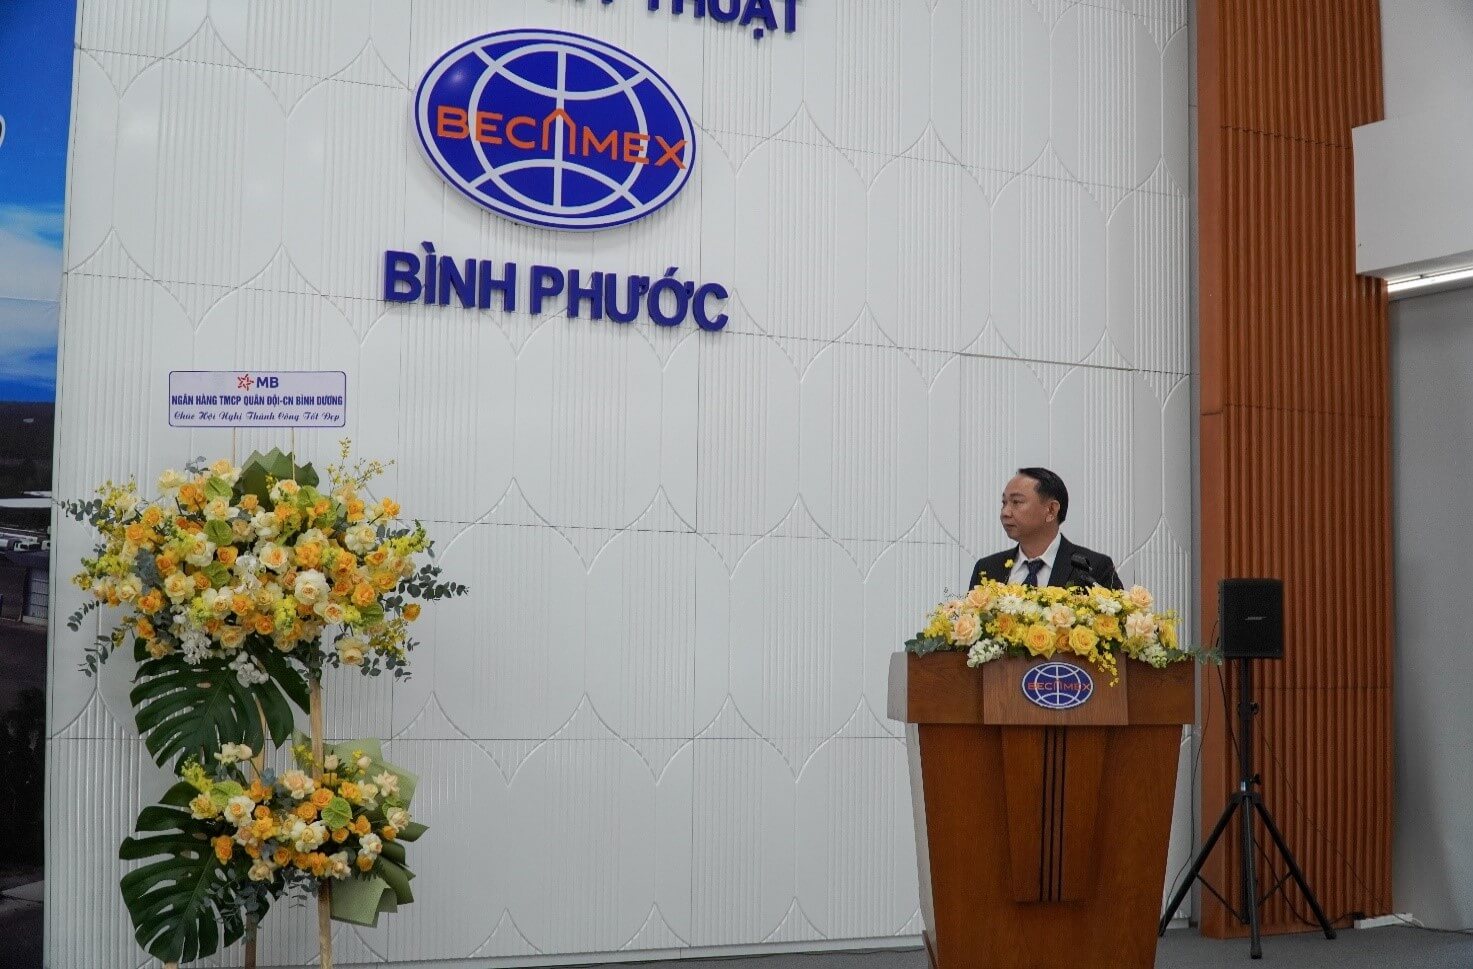 Ông Trần Văn Thưởng, Giám đốc phòng Kỹ Thuật Công ty Becamex – Bình Phước phát biểu tại hội nghị